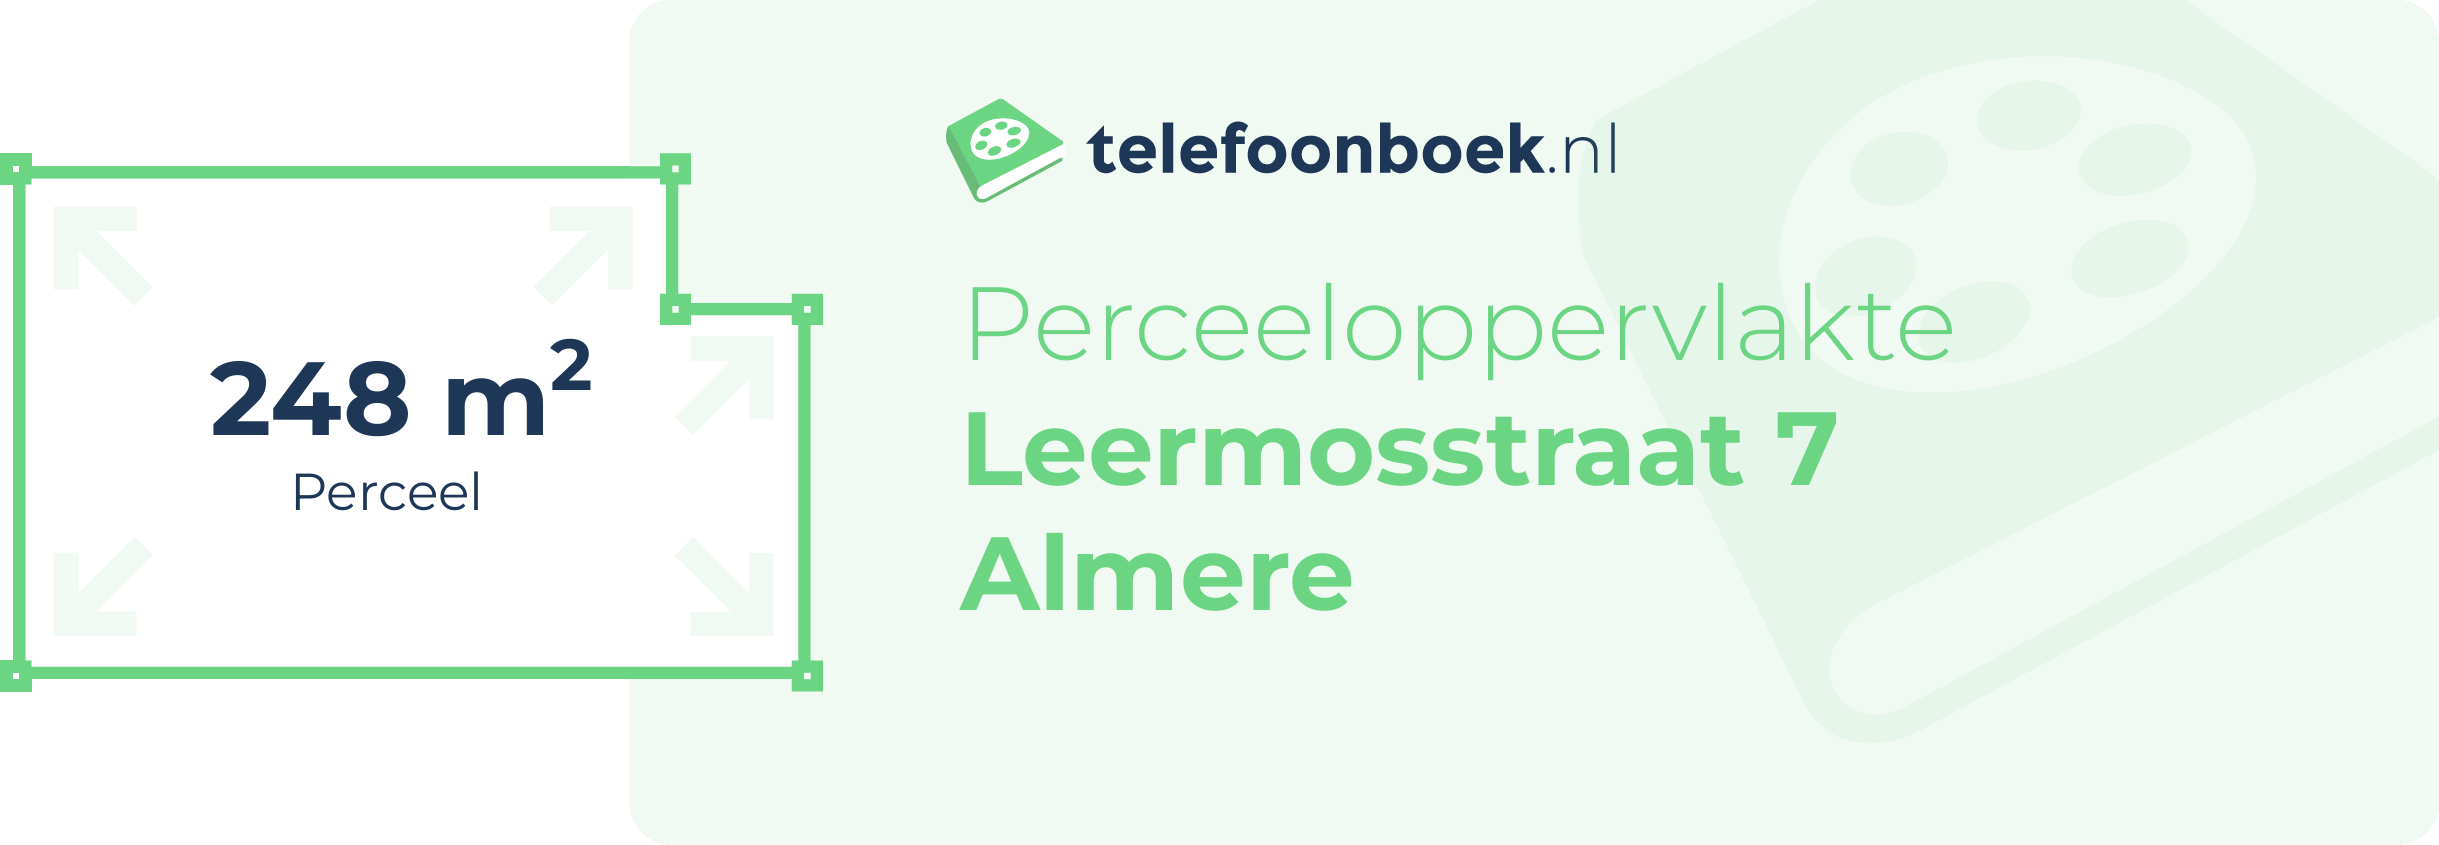 Perceeloppervlakte Leermosstraat 7 Almere